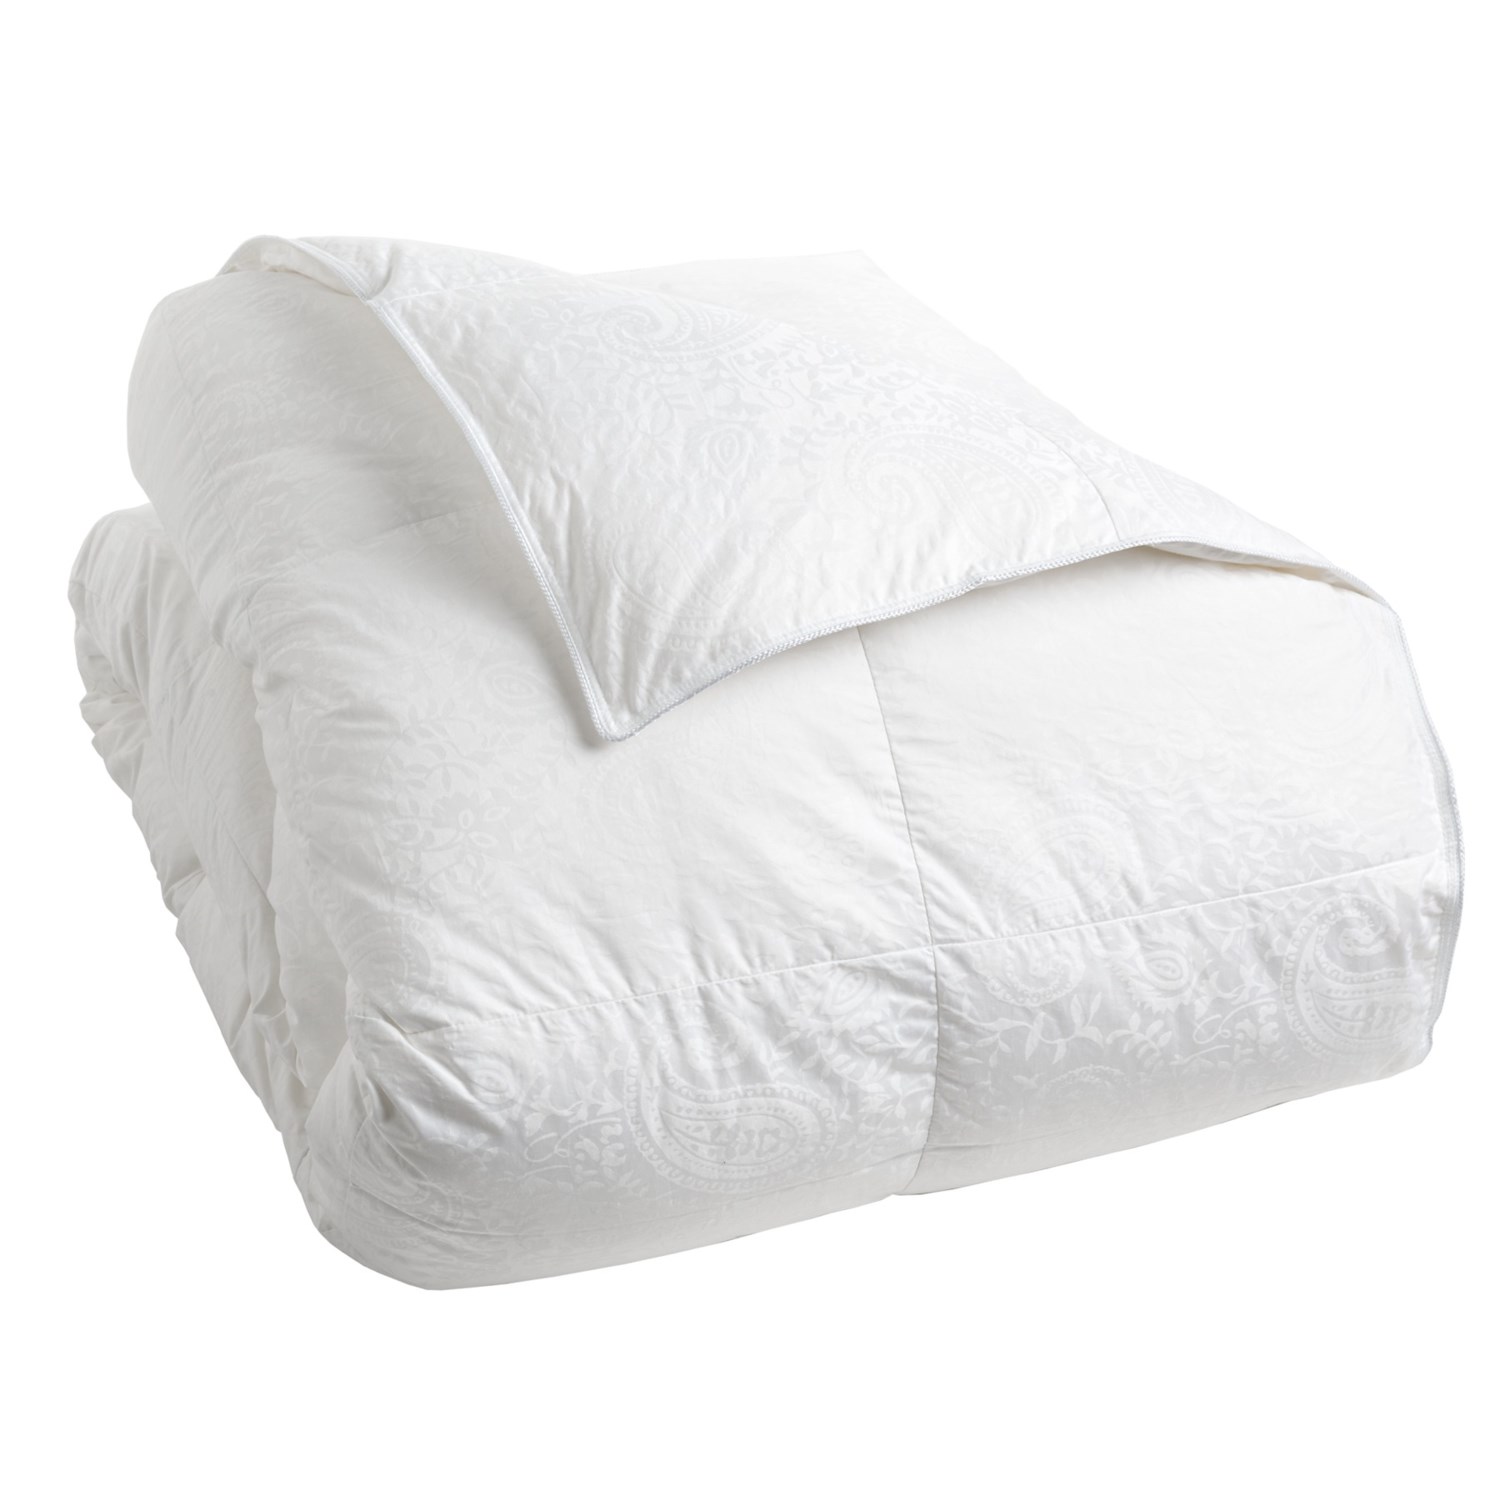 Down Inc. Premium White Duck Down Paisley Comforter   King, Medium Weight 48